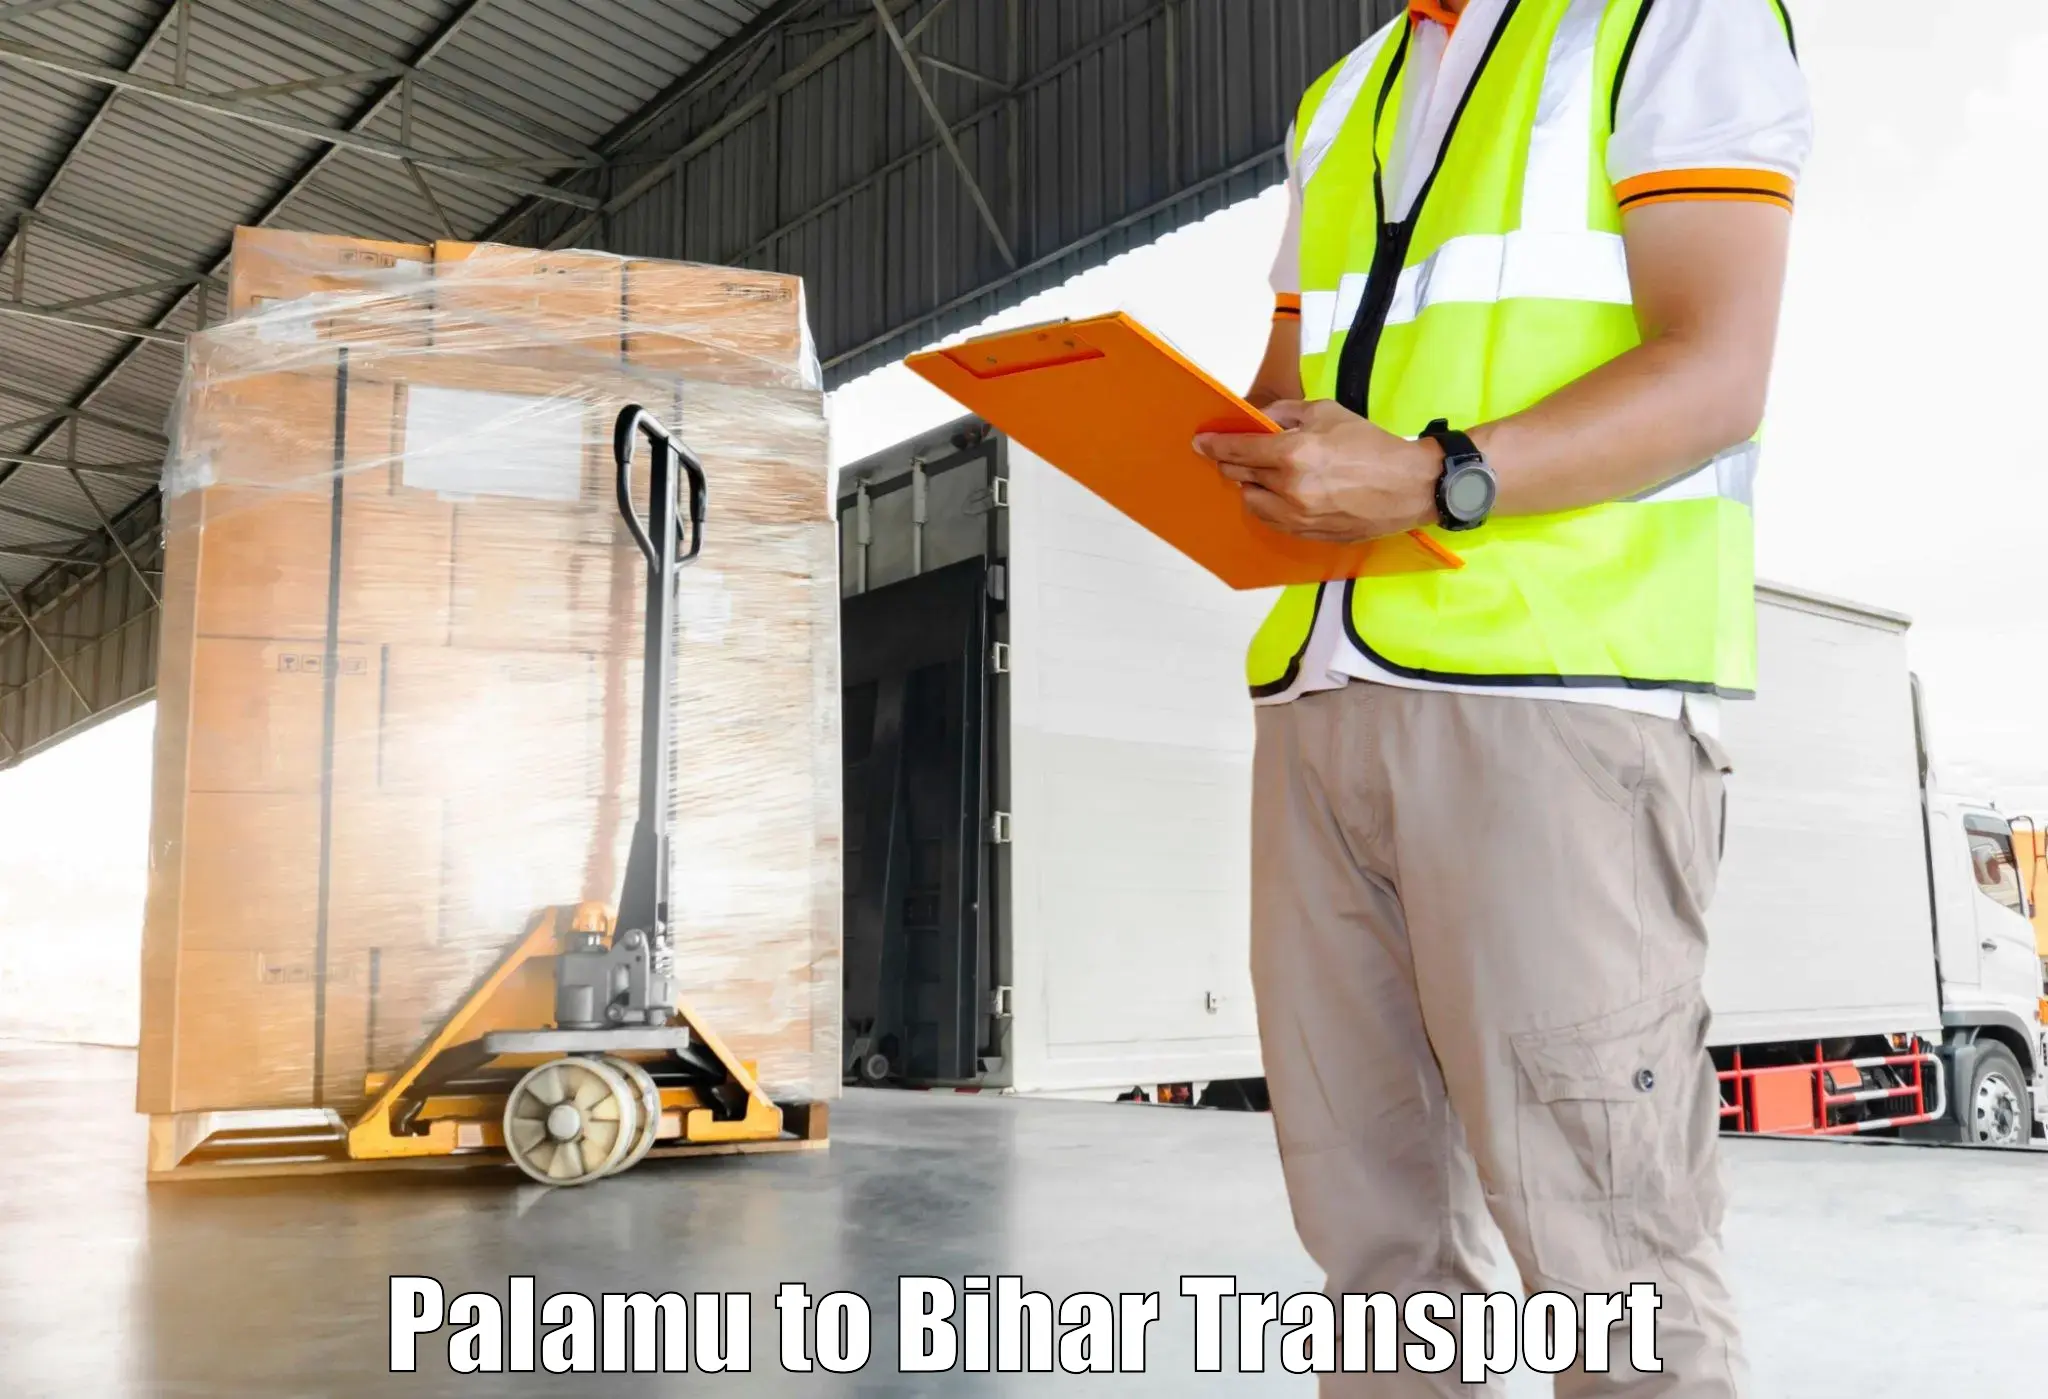 Daily transport service Palamu to Khutauna